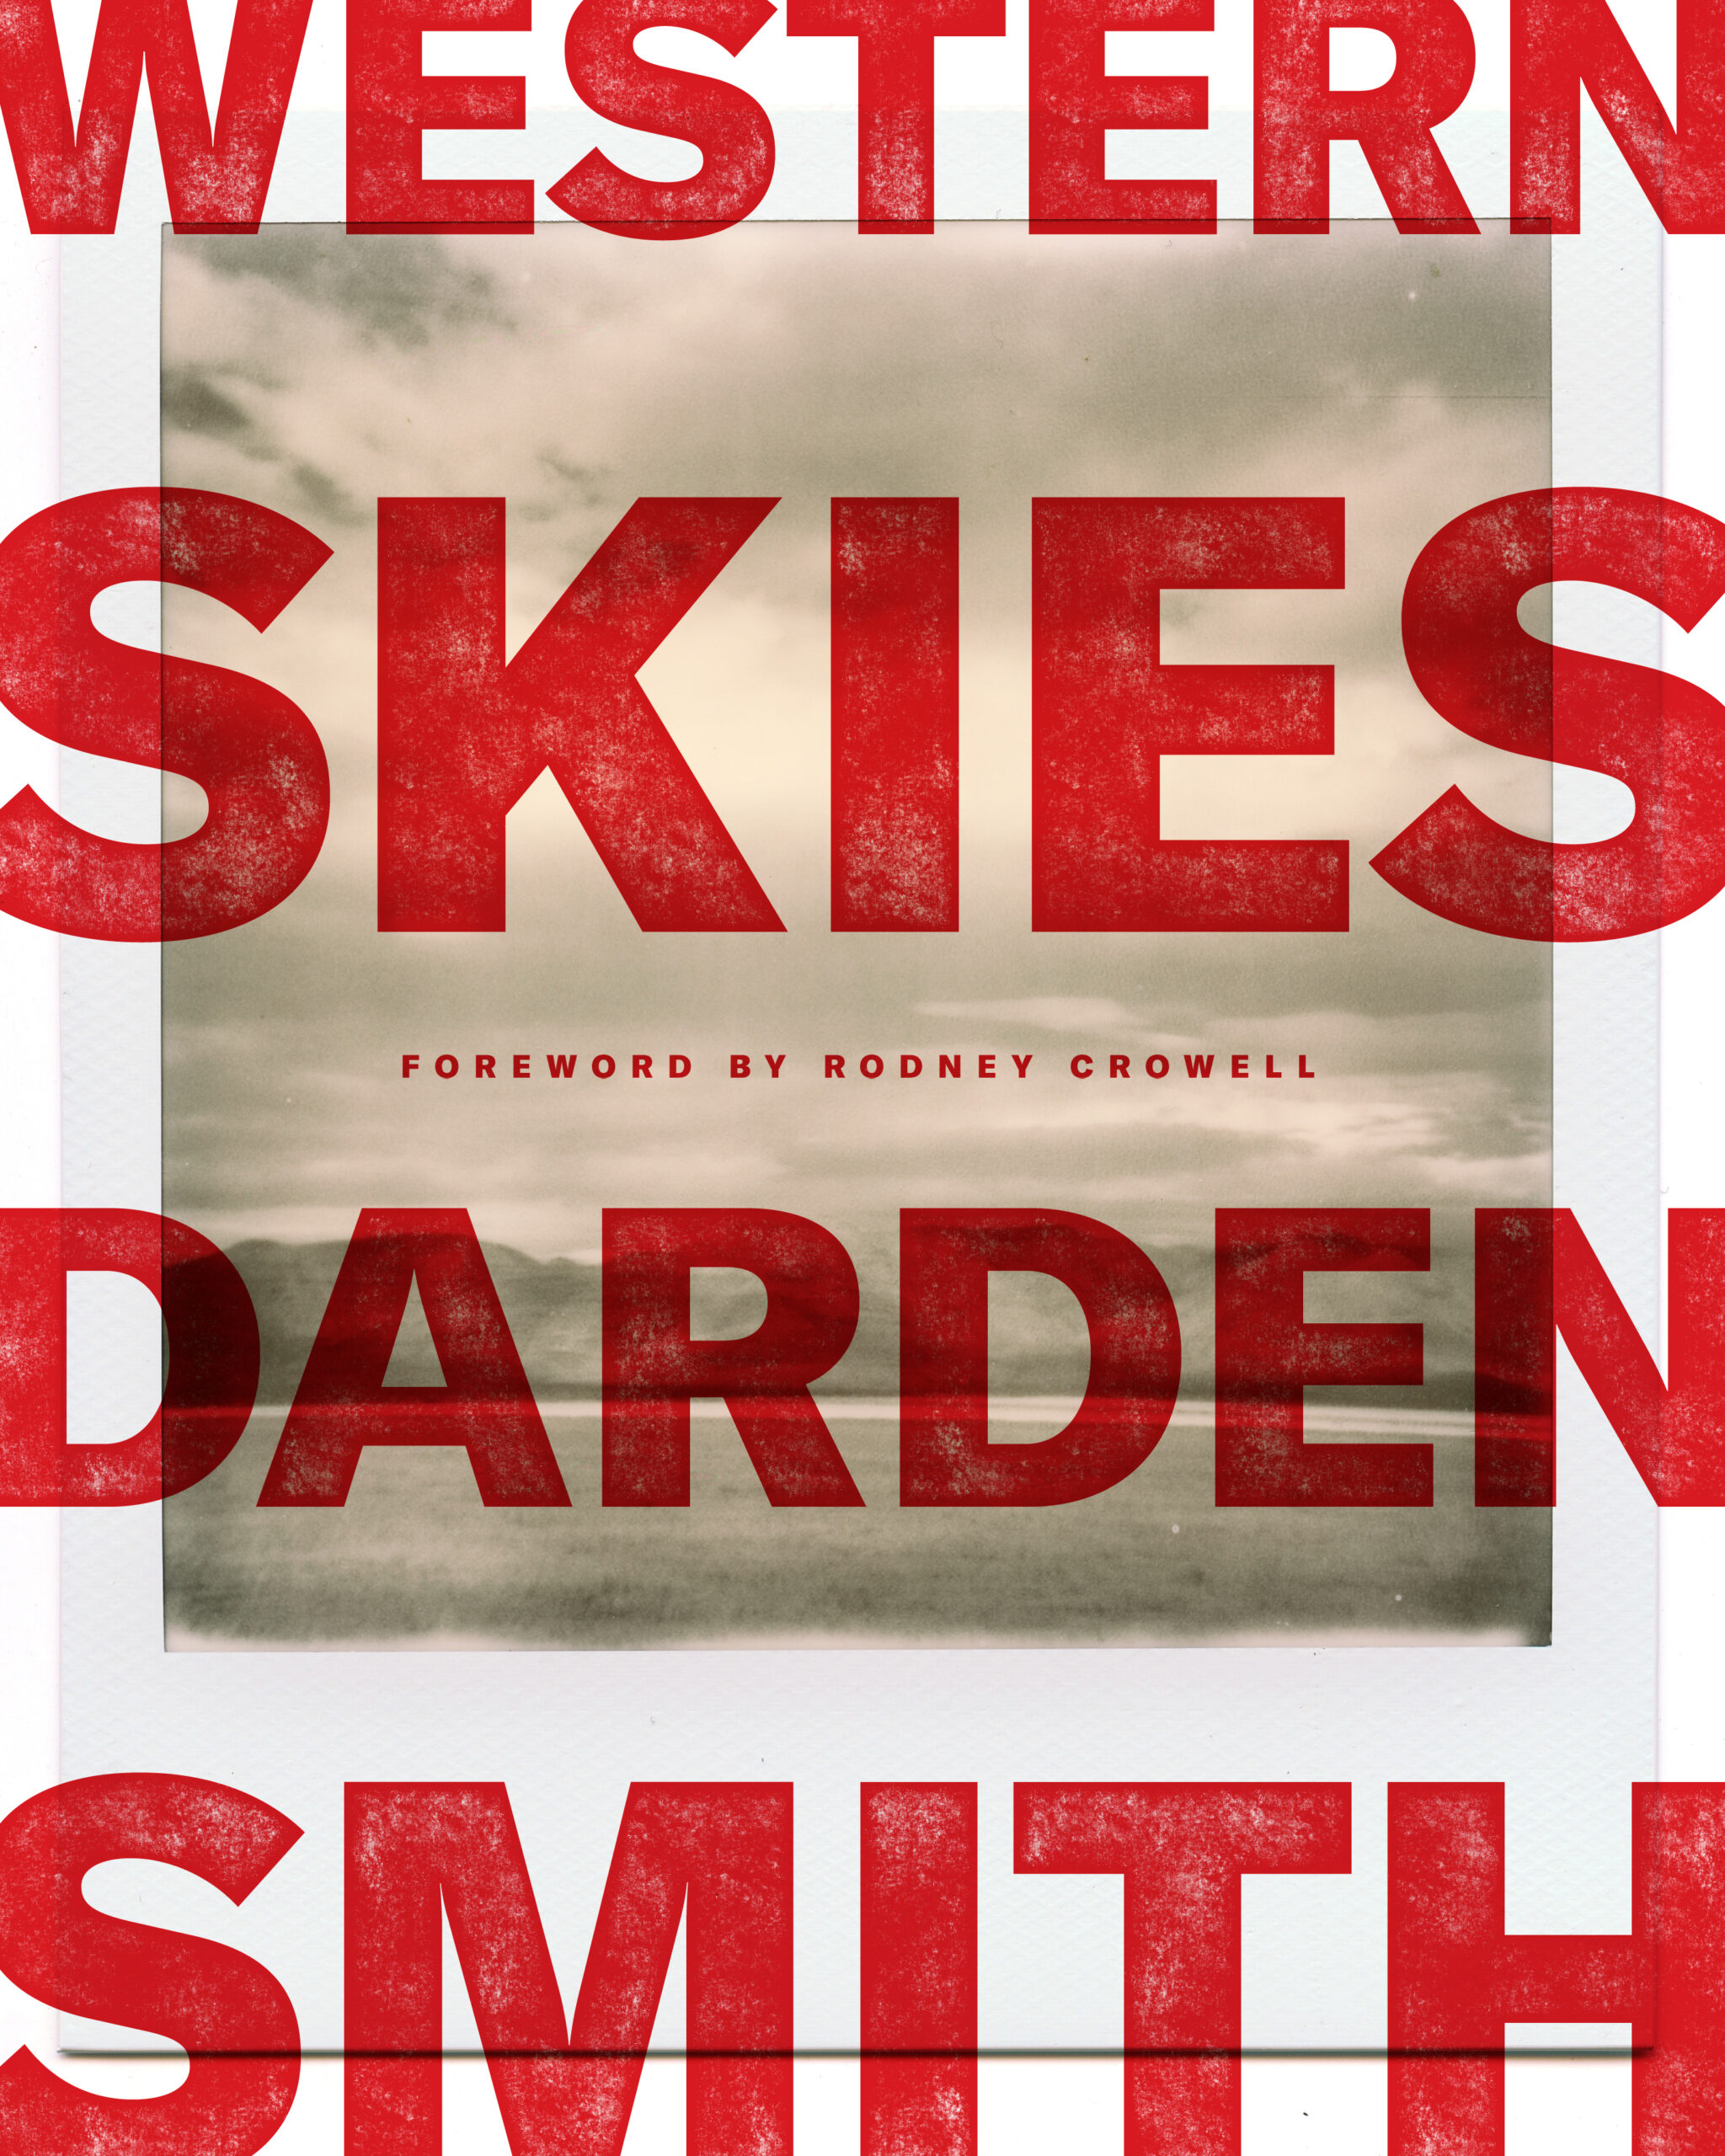 Book cover - western skies